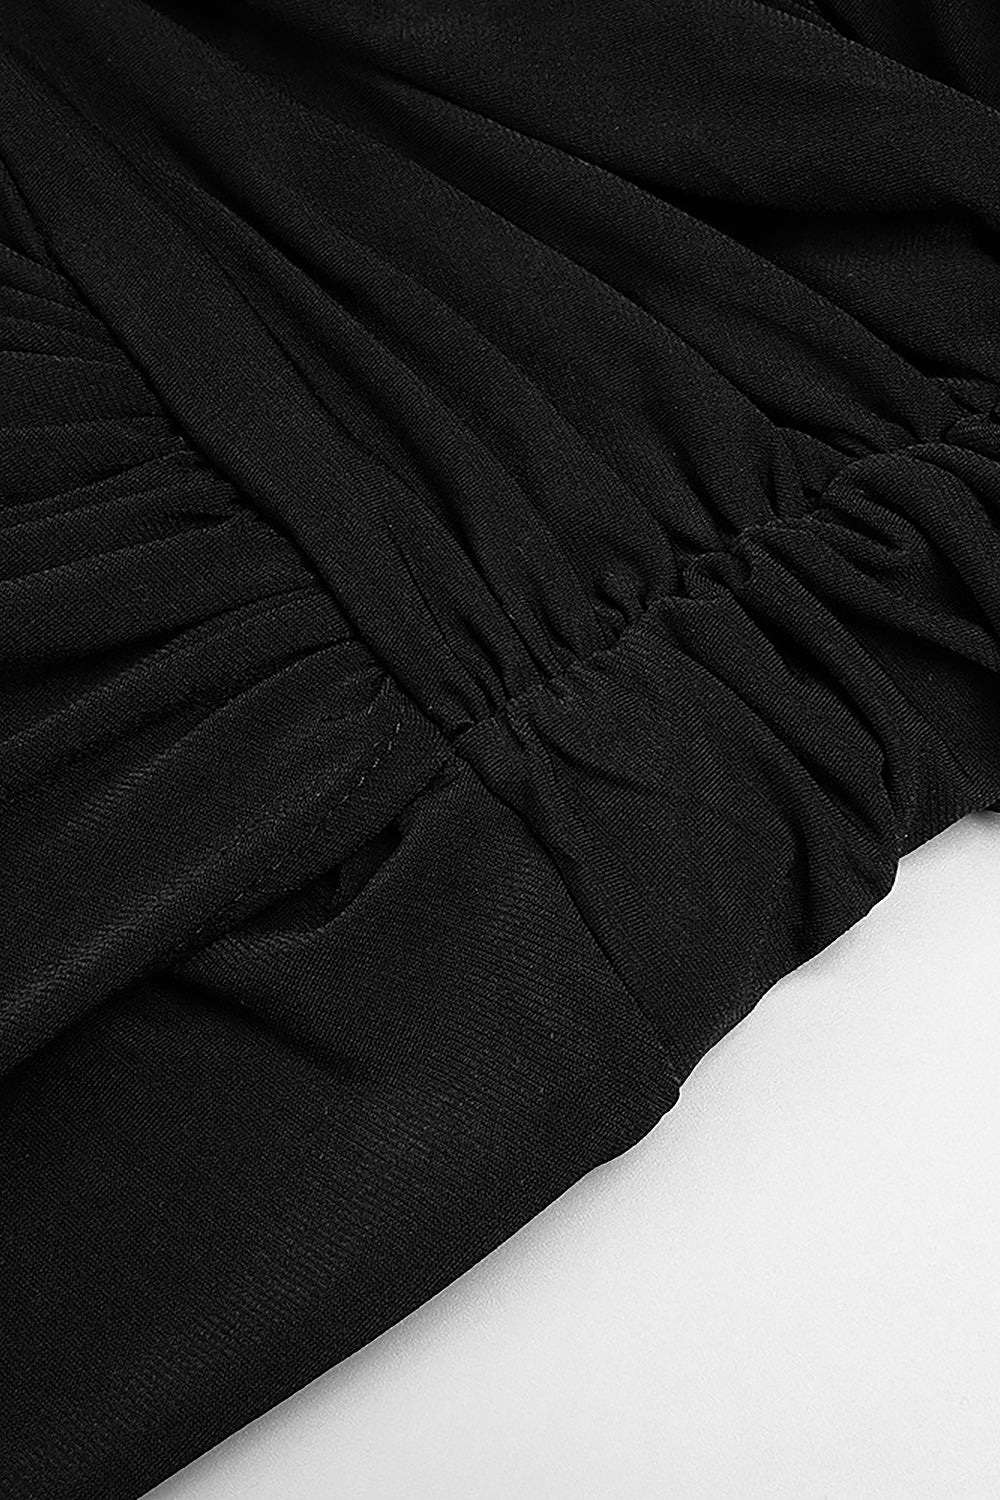 Robe froncée à bretelles et fente sur la cuisse, noire